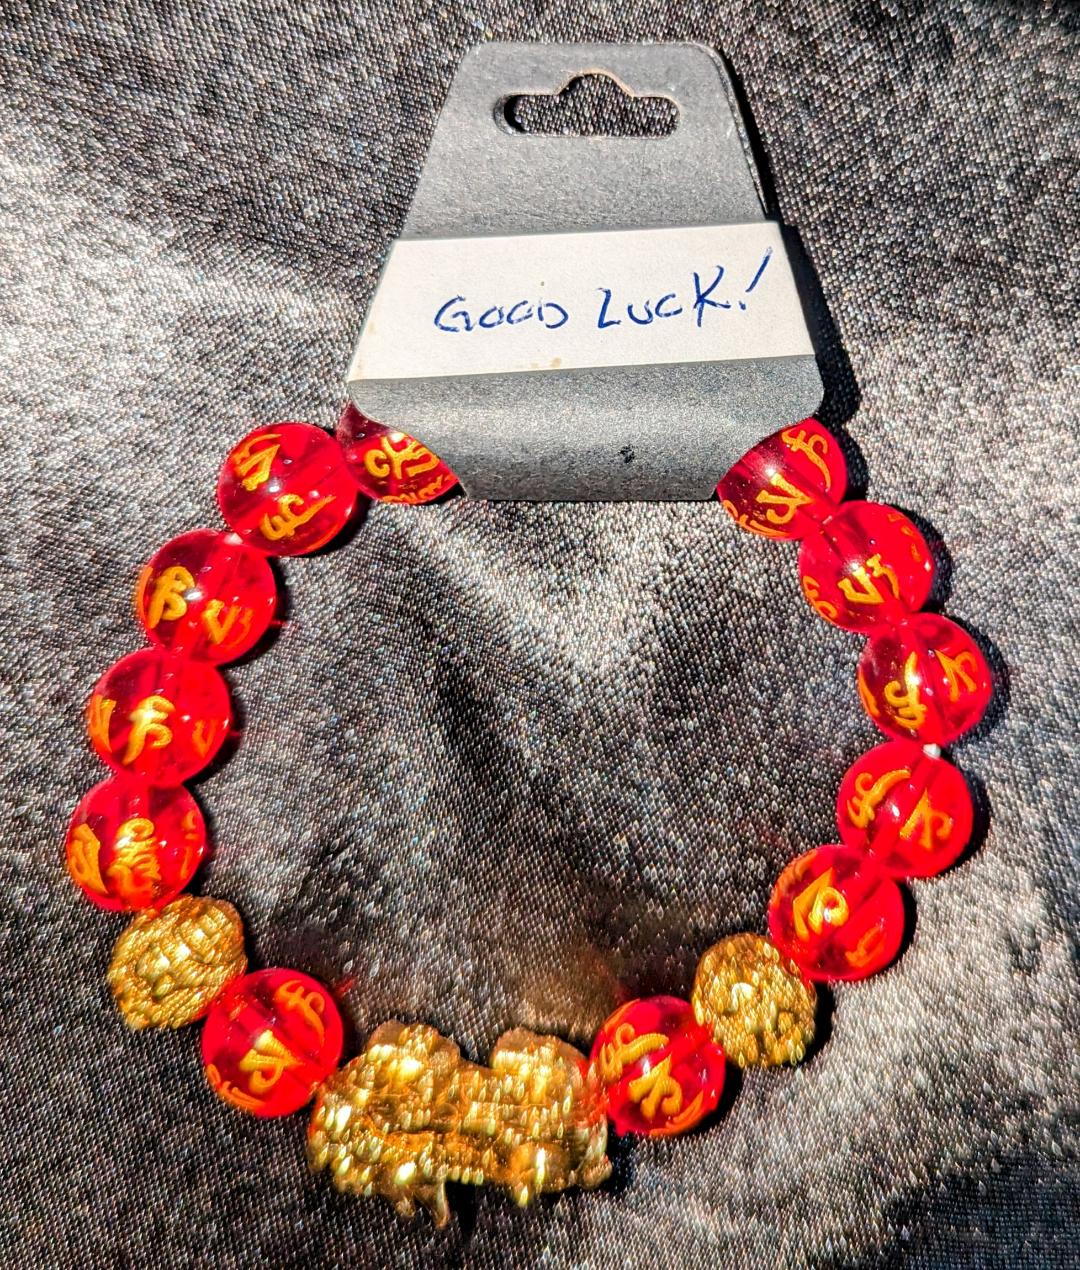 Good Luck Bracelet (10mm. beads)